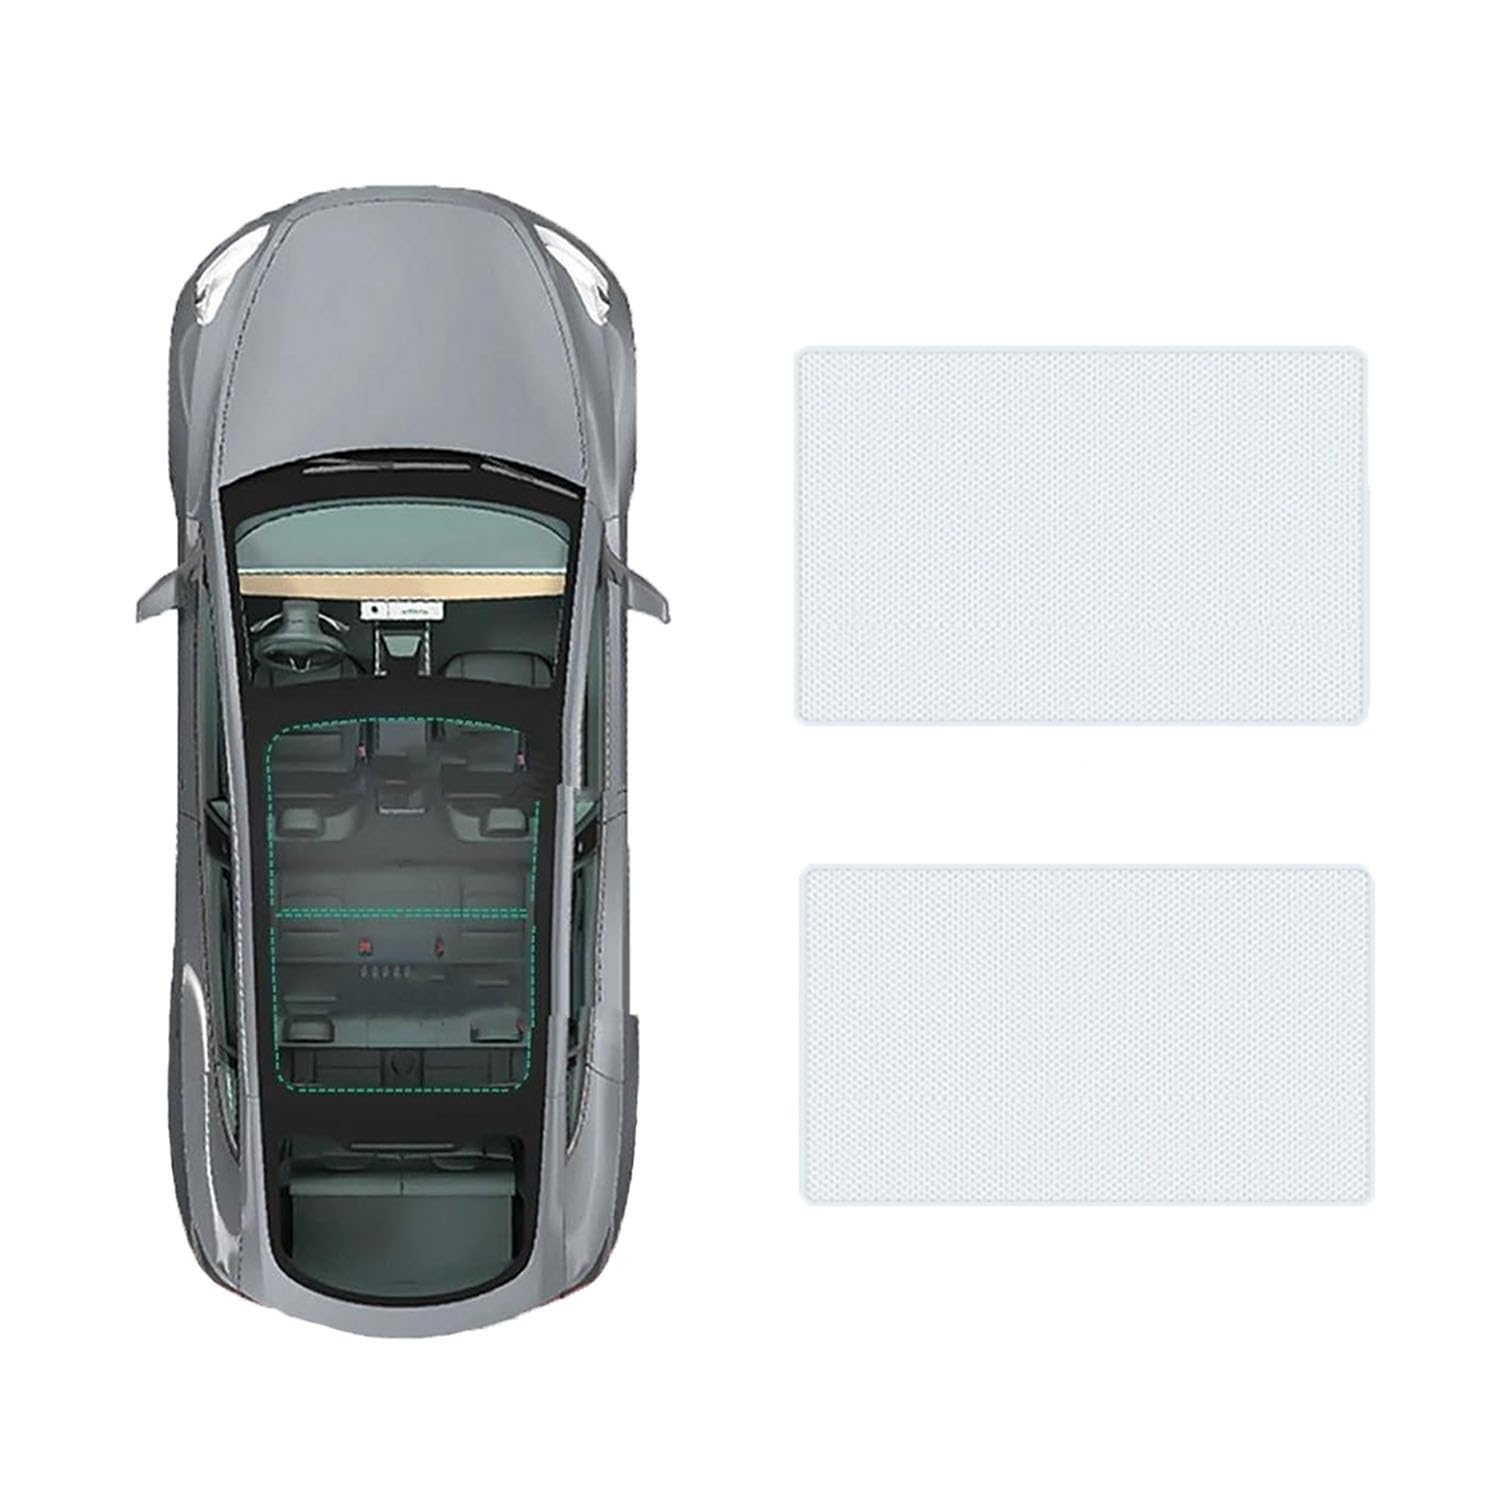 Für Toyota Highlander 2015- Autofenster Sonnenschutz Dachsonnenschutz Auto Schiebedach Sonnenschirm Dachfenster Rollo Beschattung Zubehör,A-Gray White Regular Style von JiAYuF